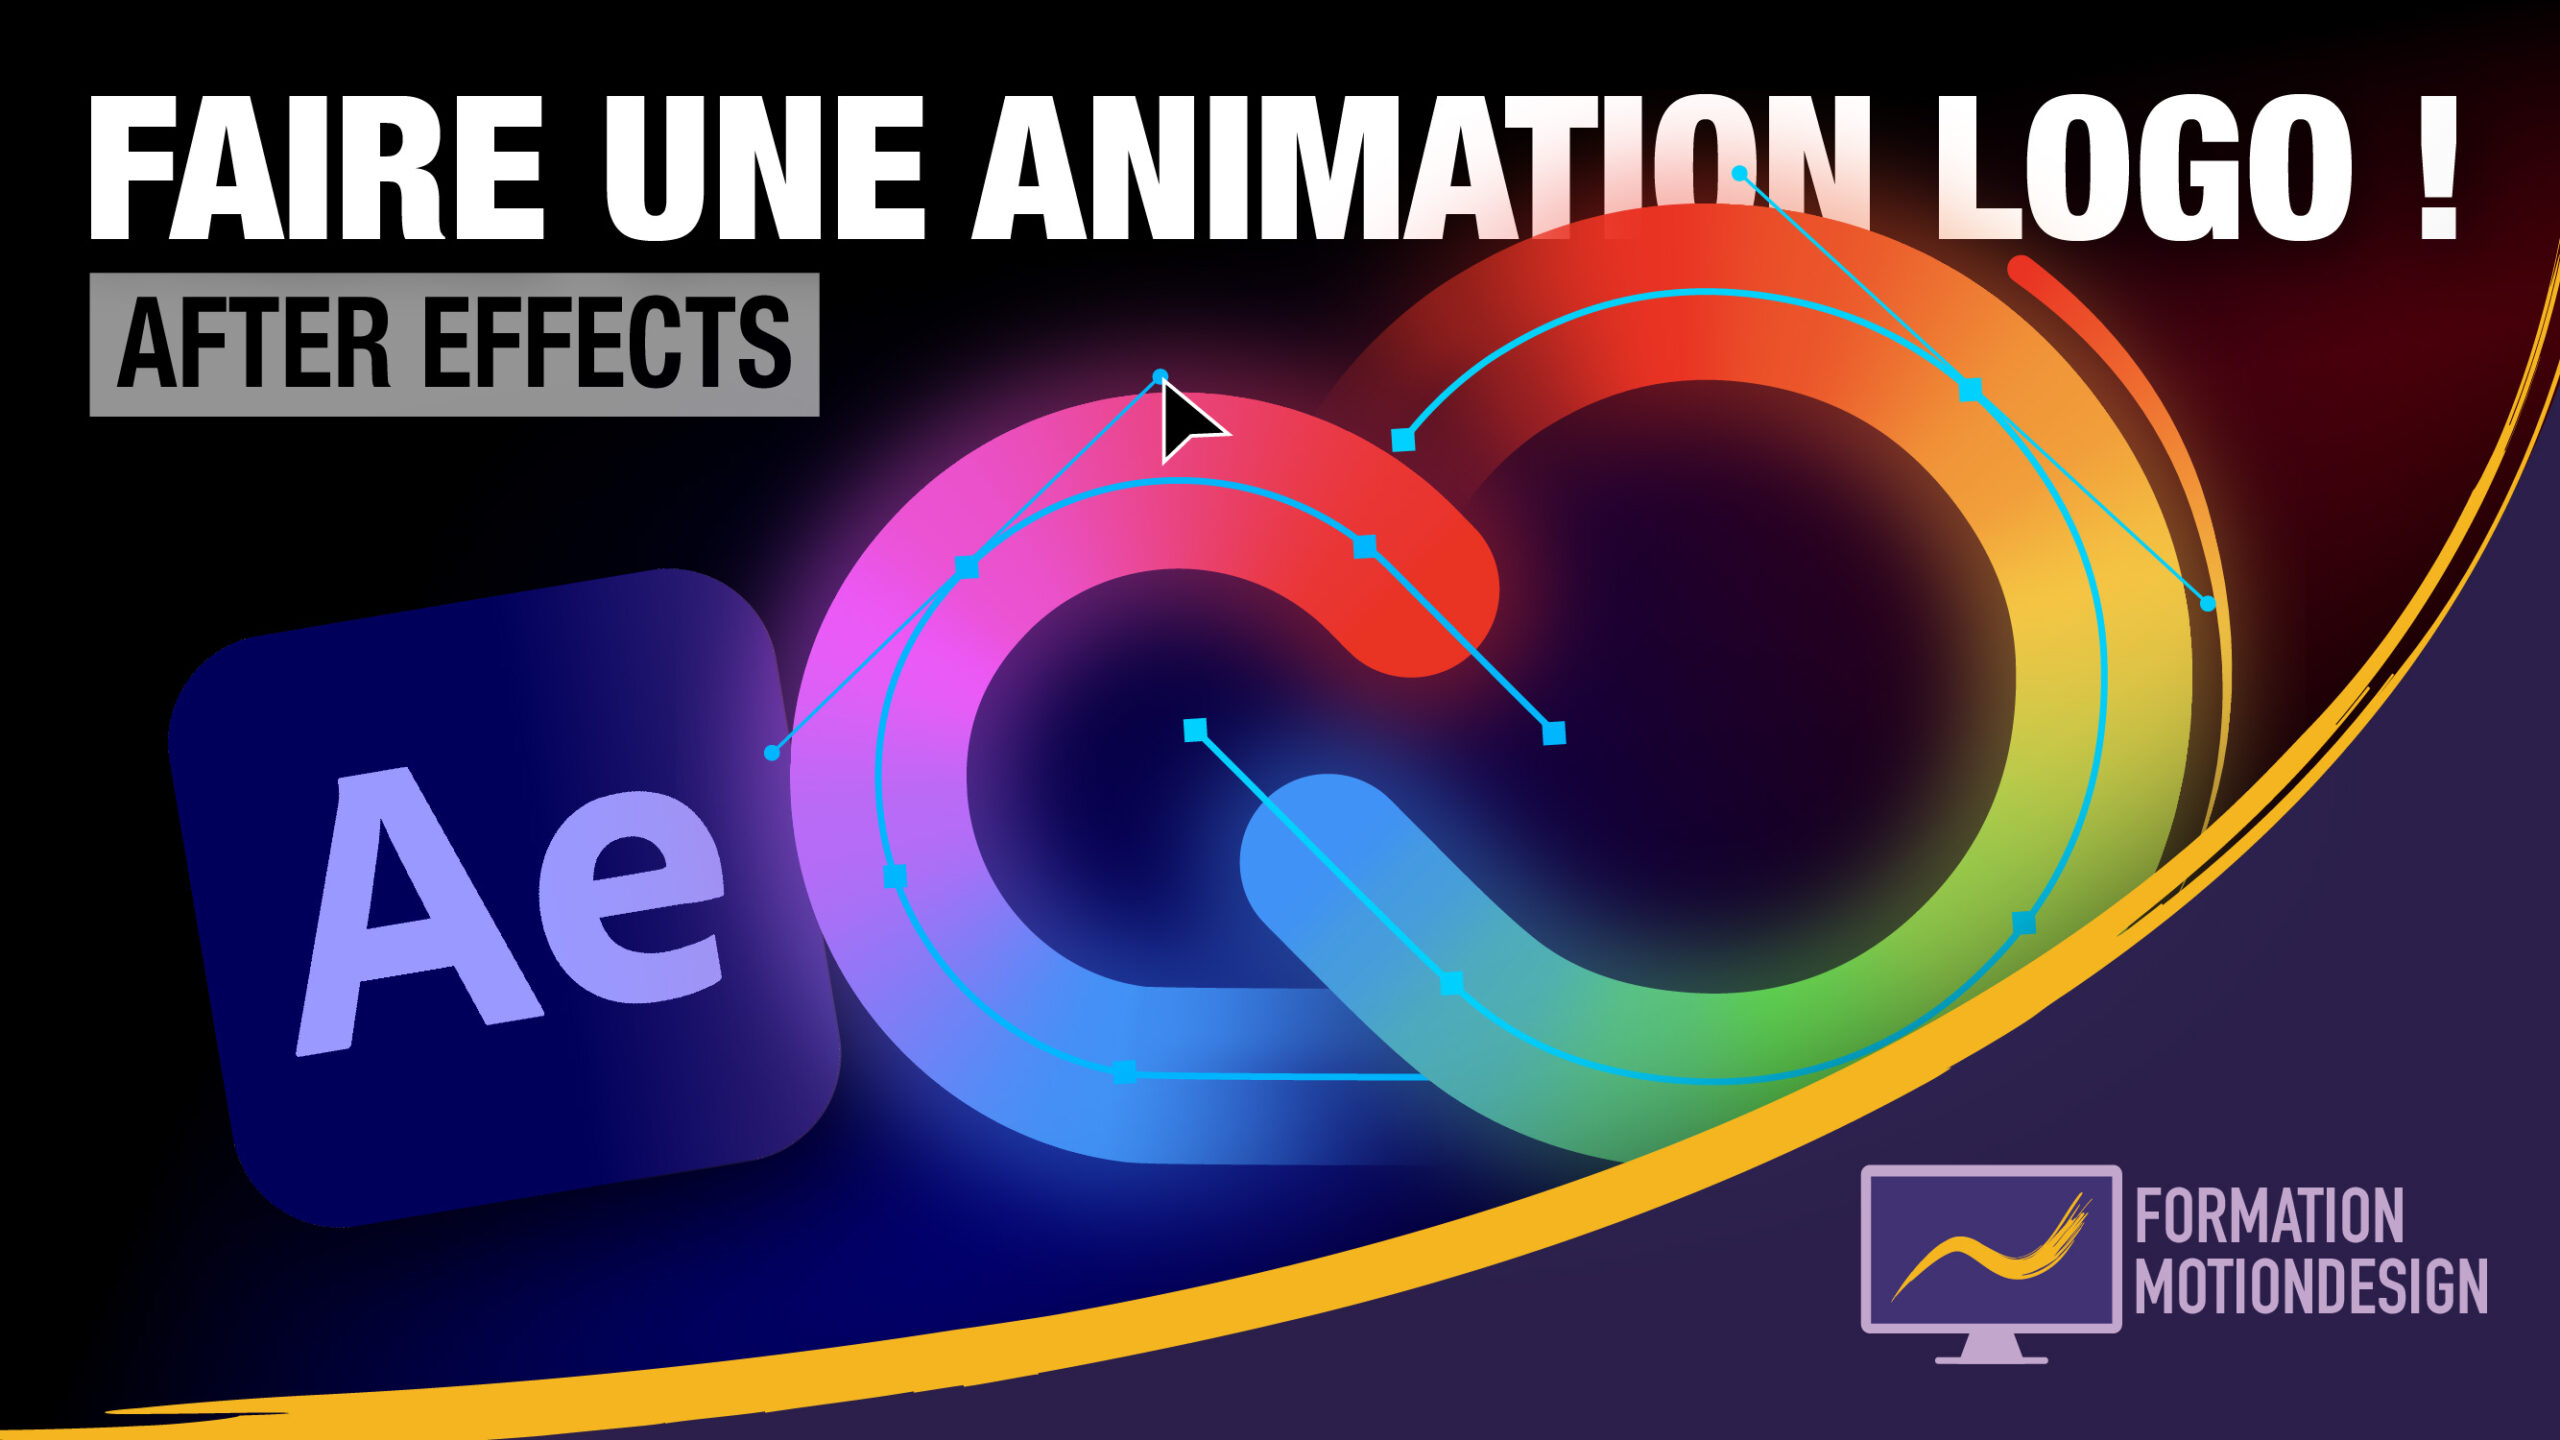 Comment faire une animation logo sur After Effects ? – Tuto animer un logo